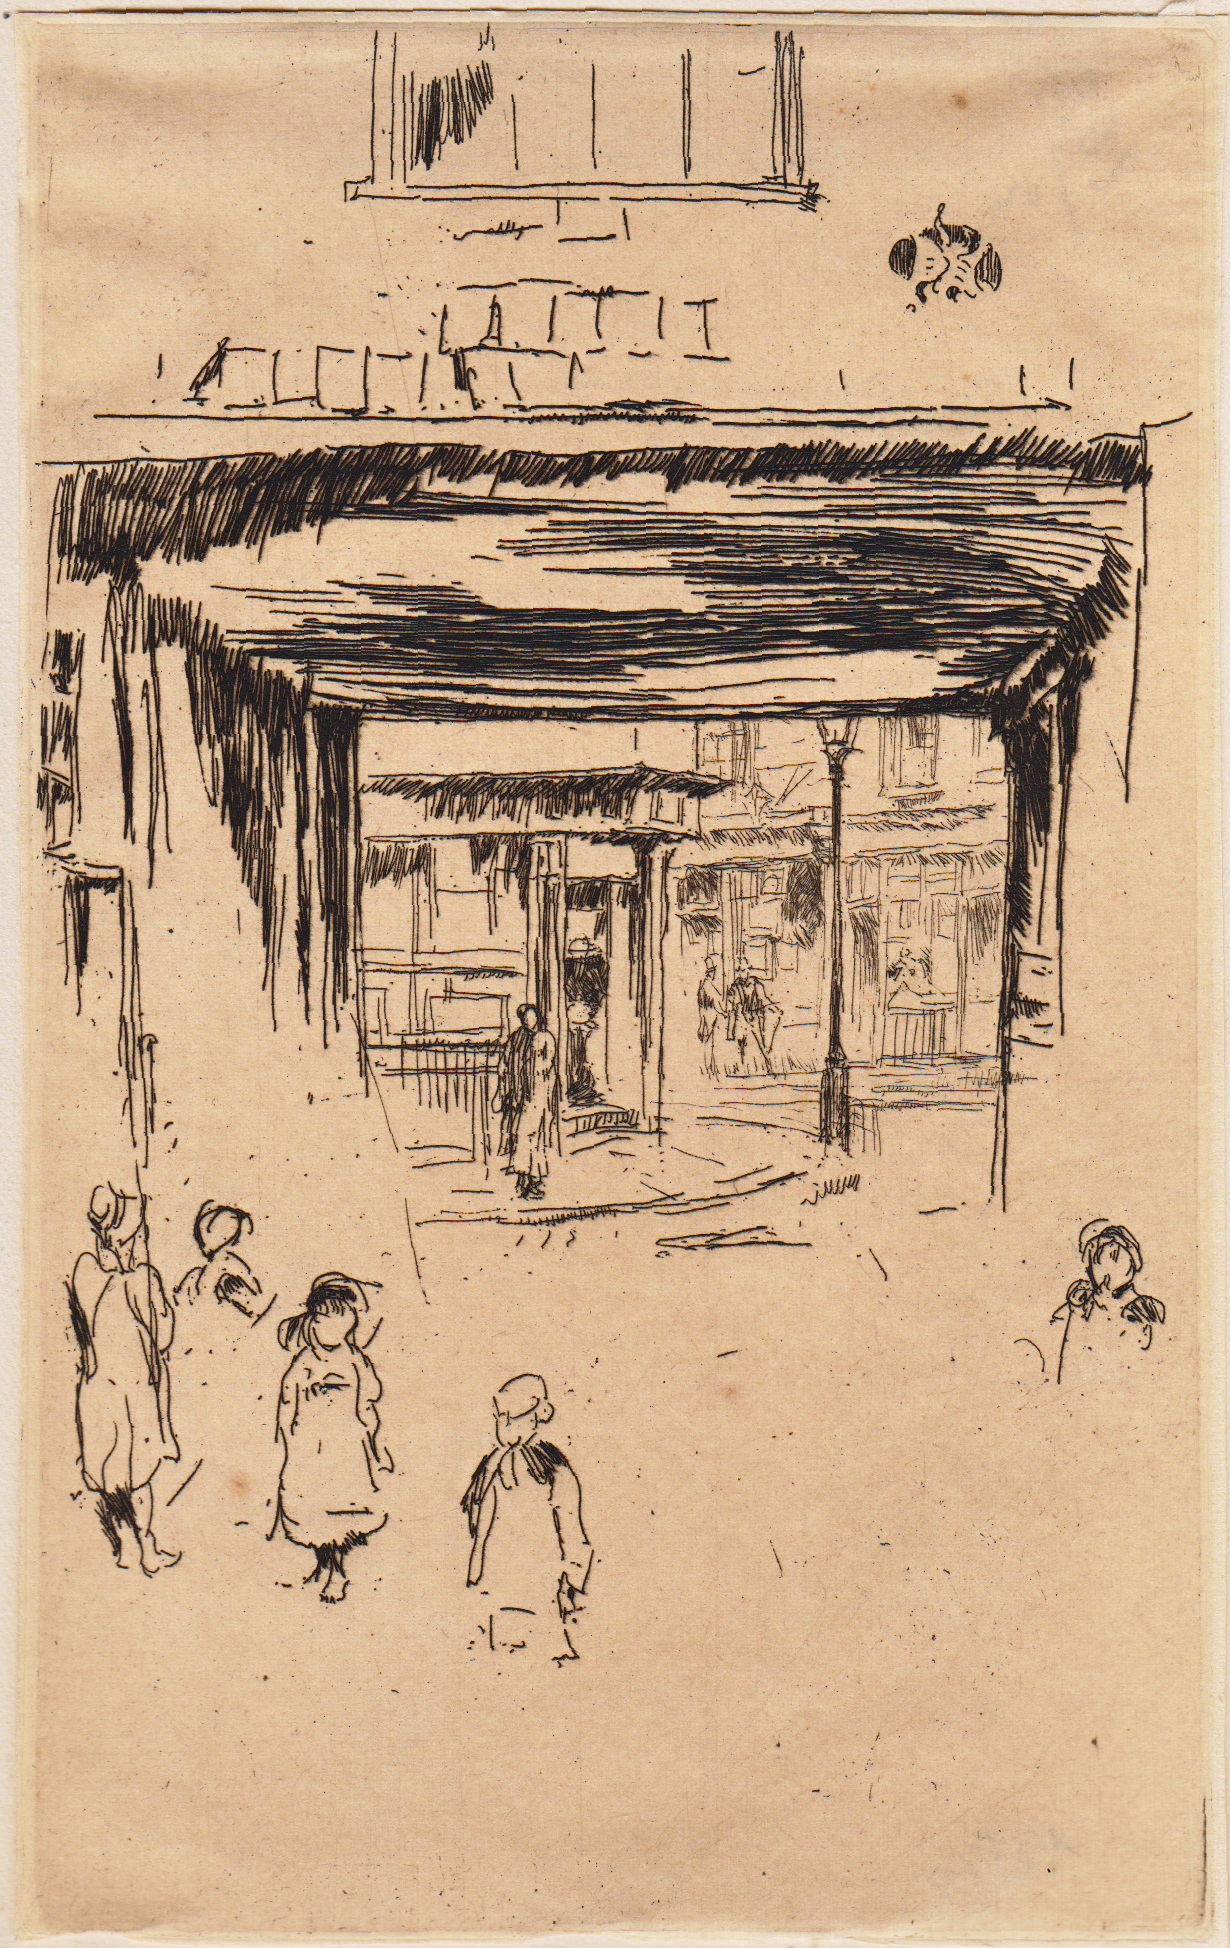 Whistler, Drury Lane, etching, 1880-1881